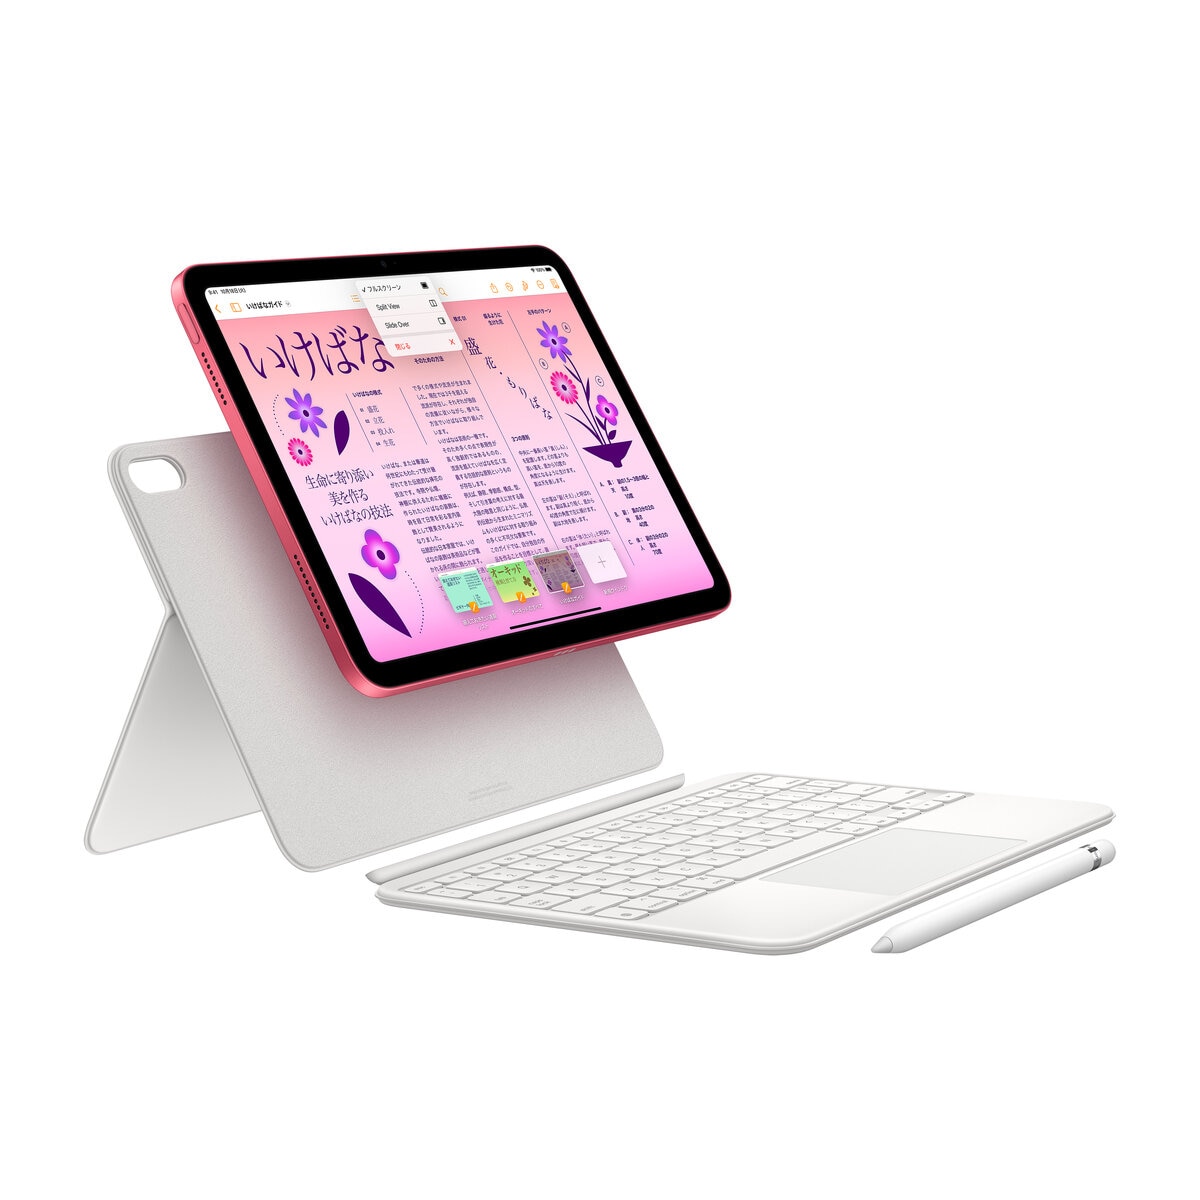 Apple iPad (第10世代) 10.9インチ Wi-Fiモデル 256GB ピンク | Costco